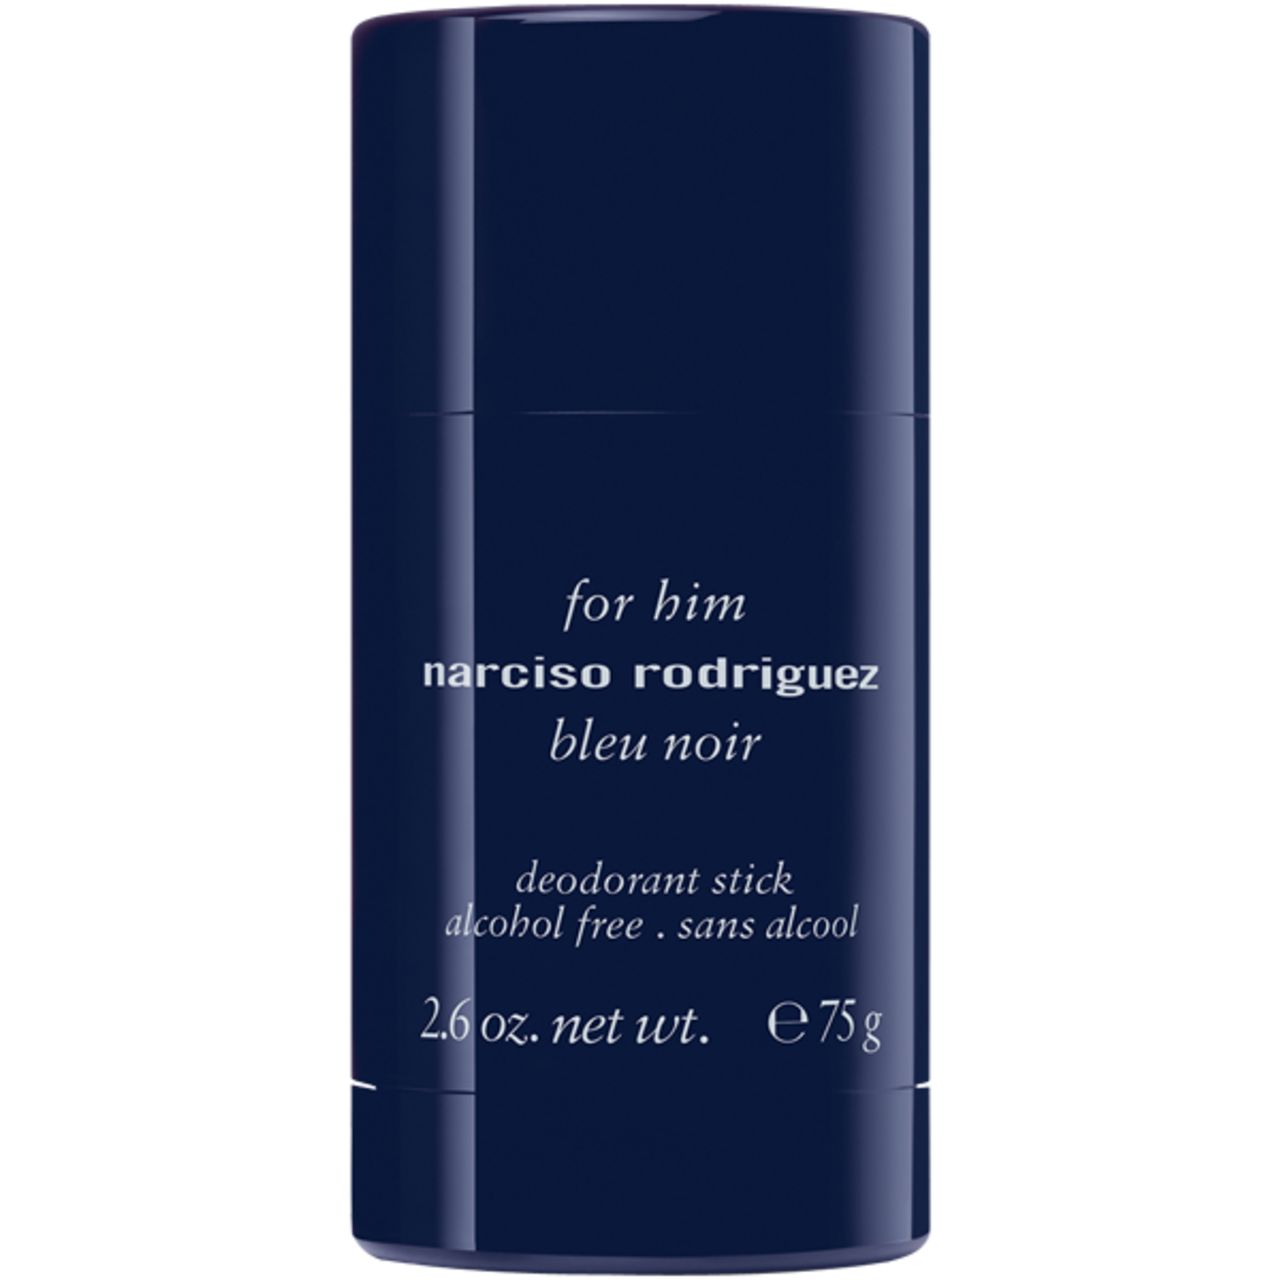 Narciso Rodriguez, For Him Bleu Noir Deodorant Stick